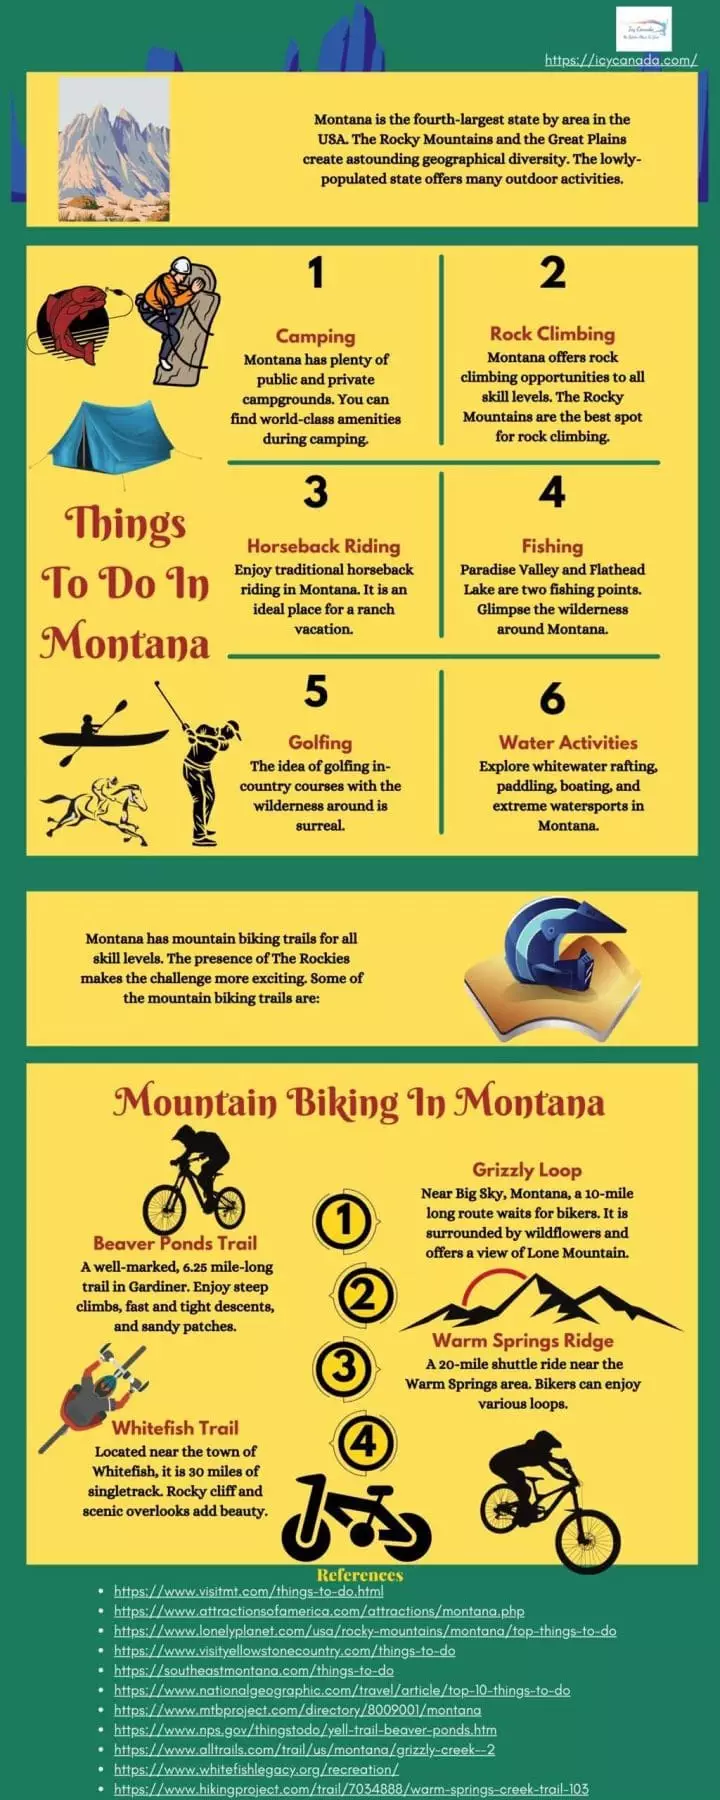 Top Mountain Biking Trails In Montana